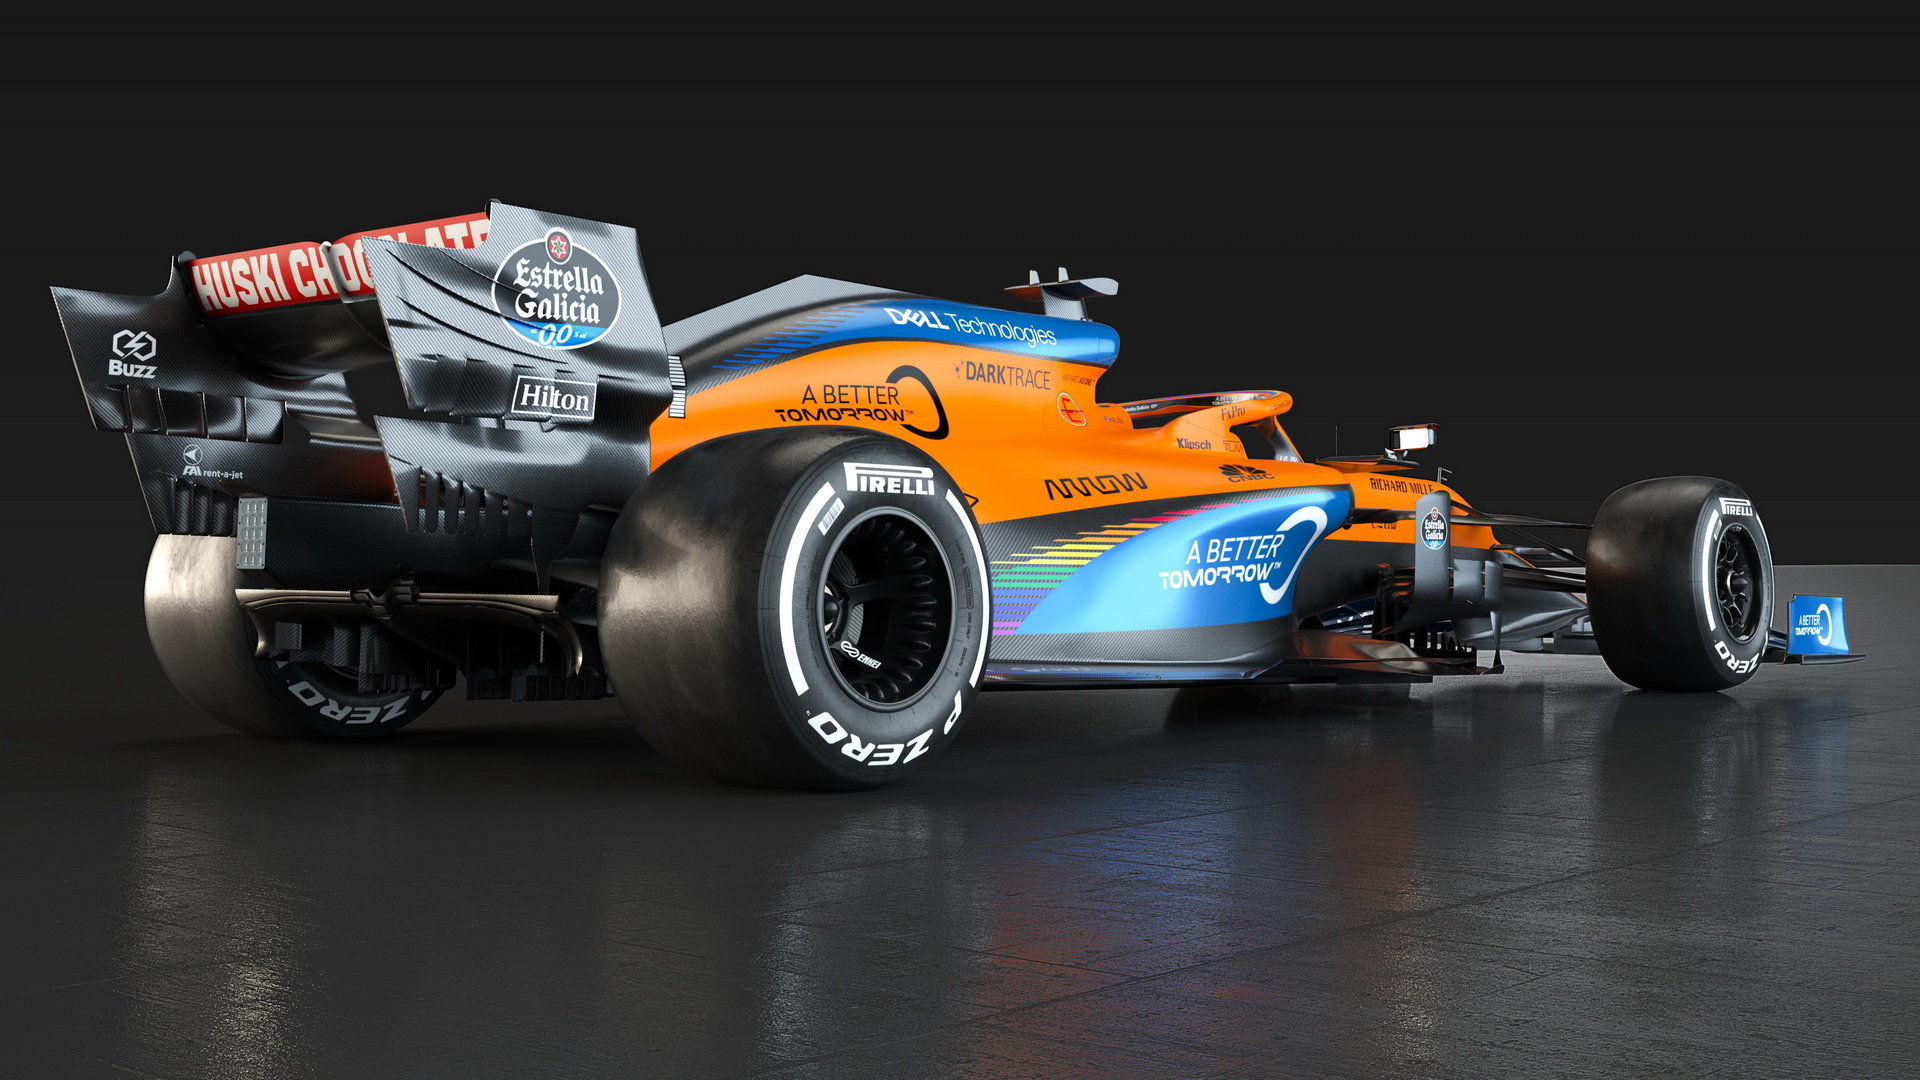 Nové zbarvení McLarenu MCL35 navazující na kampaň "We Race As One"